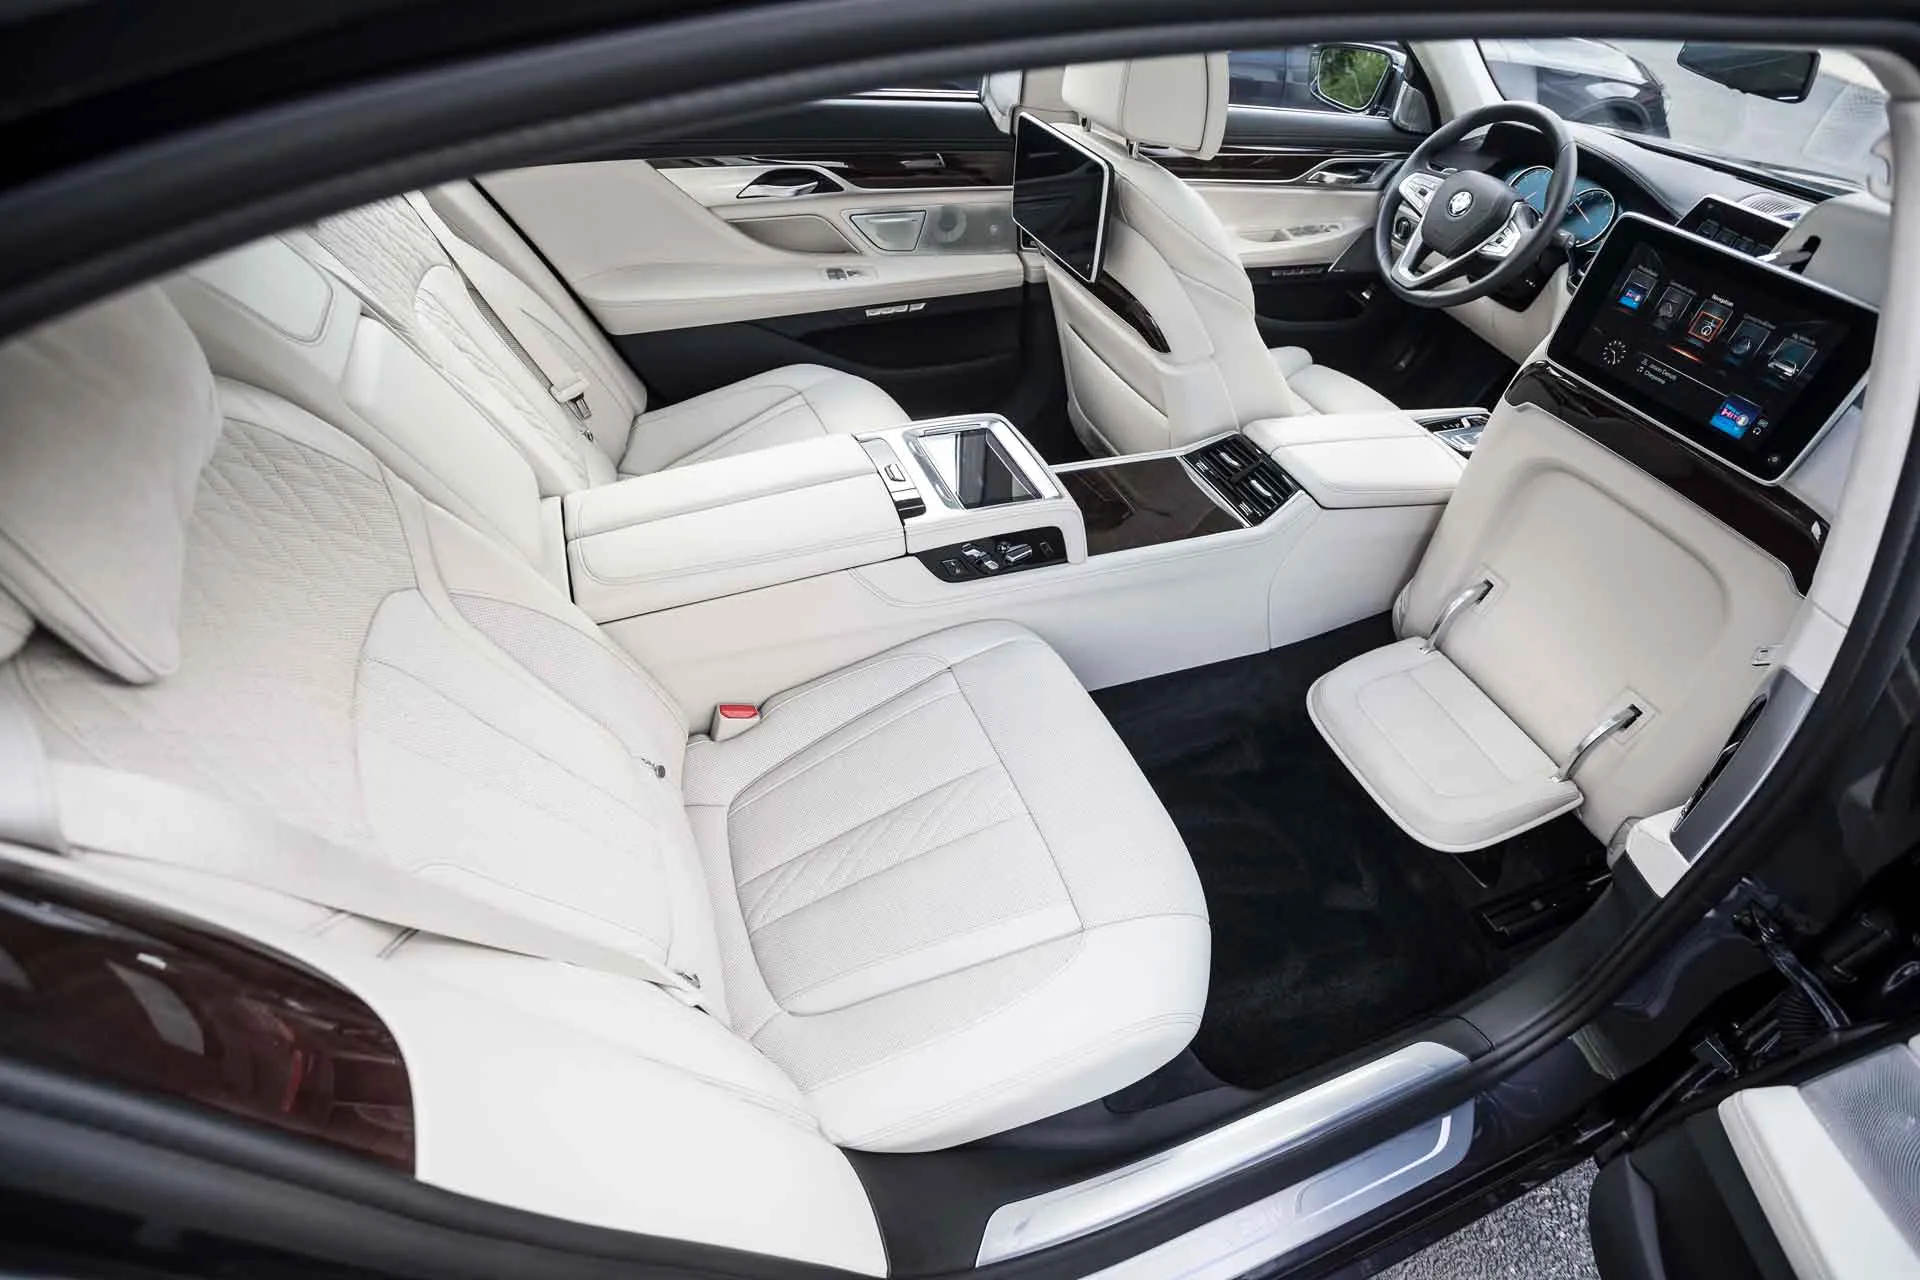 Chi tiết nội thất sang trọng của xe BMW 7 Series 2